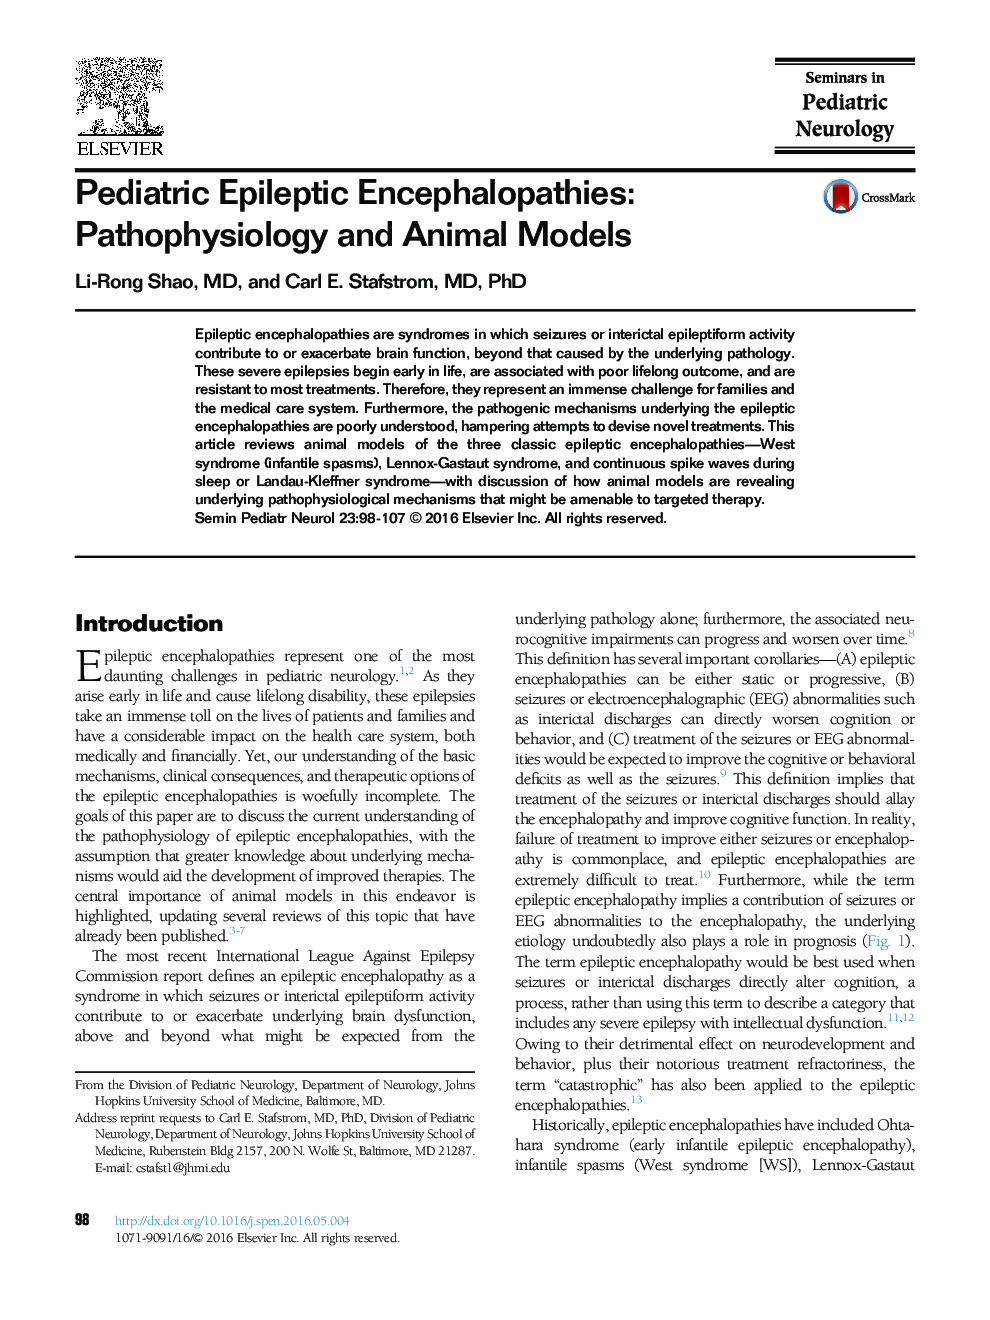 Encephalopathies صرع کودکان: پاتوفیزیولوژی و مدل های حیوانی